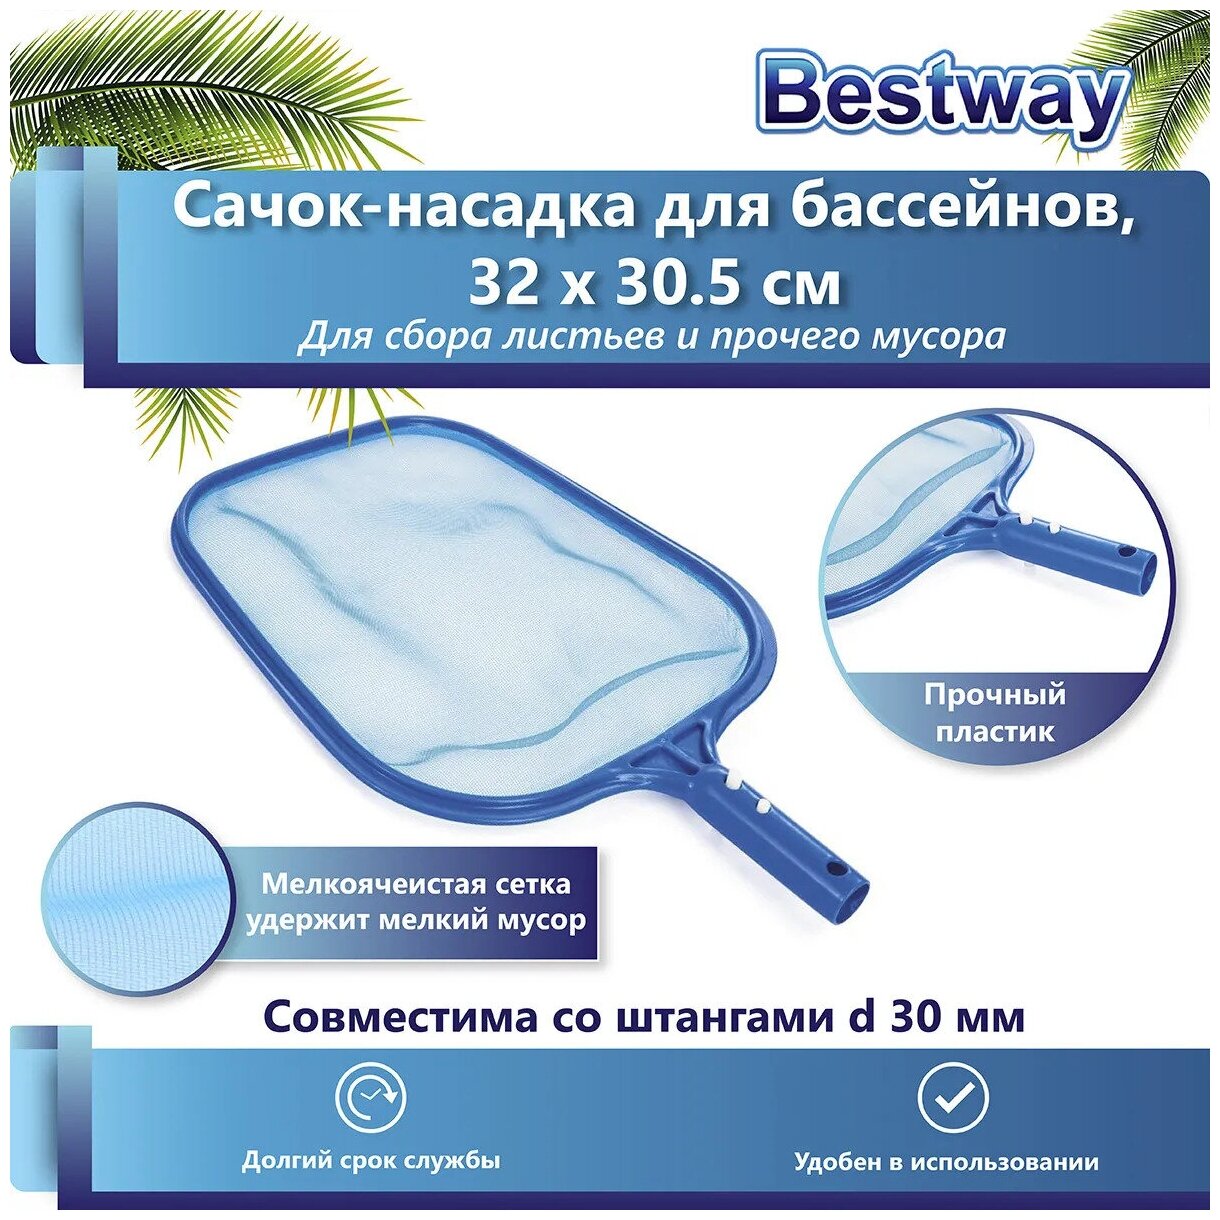 Насадка-сачок Bestway для сбора мусора с поверхности бассейна 32x30.5см 58277, для чистки бассейна